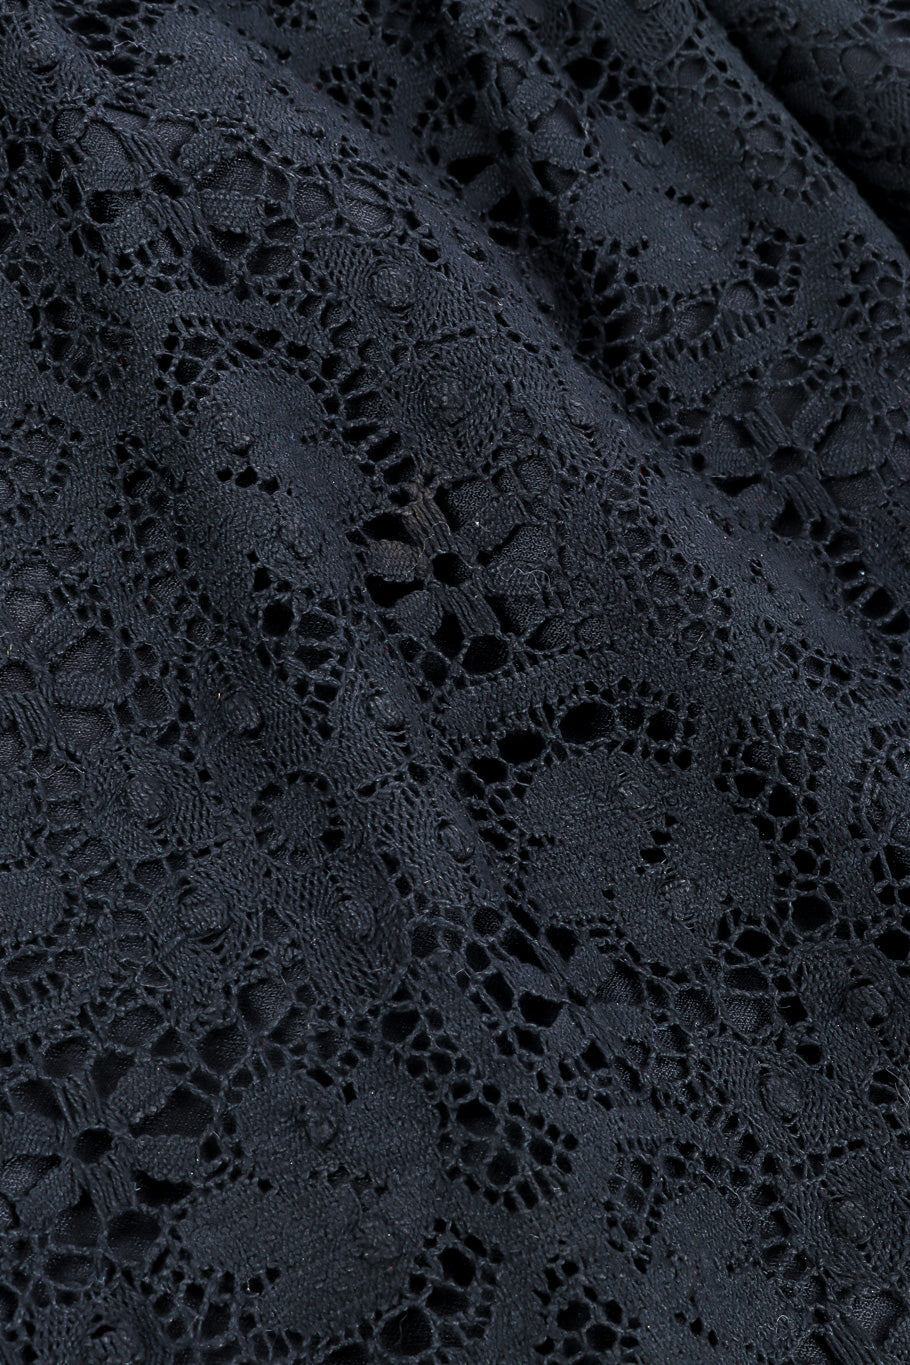 Cutout dress by Sandine Originals lace close @recessla